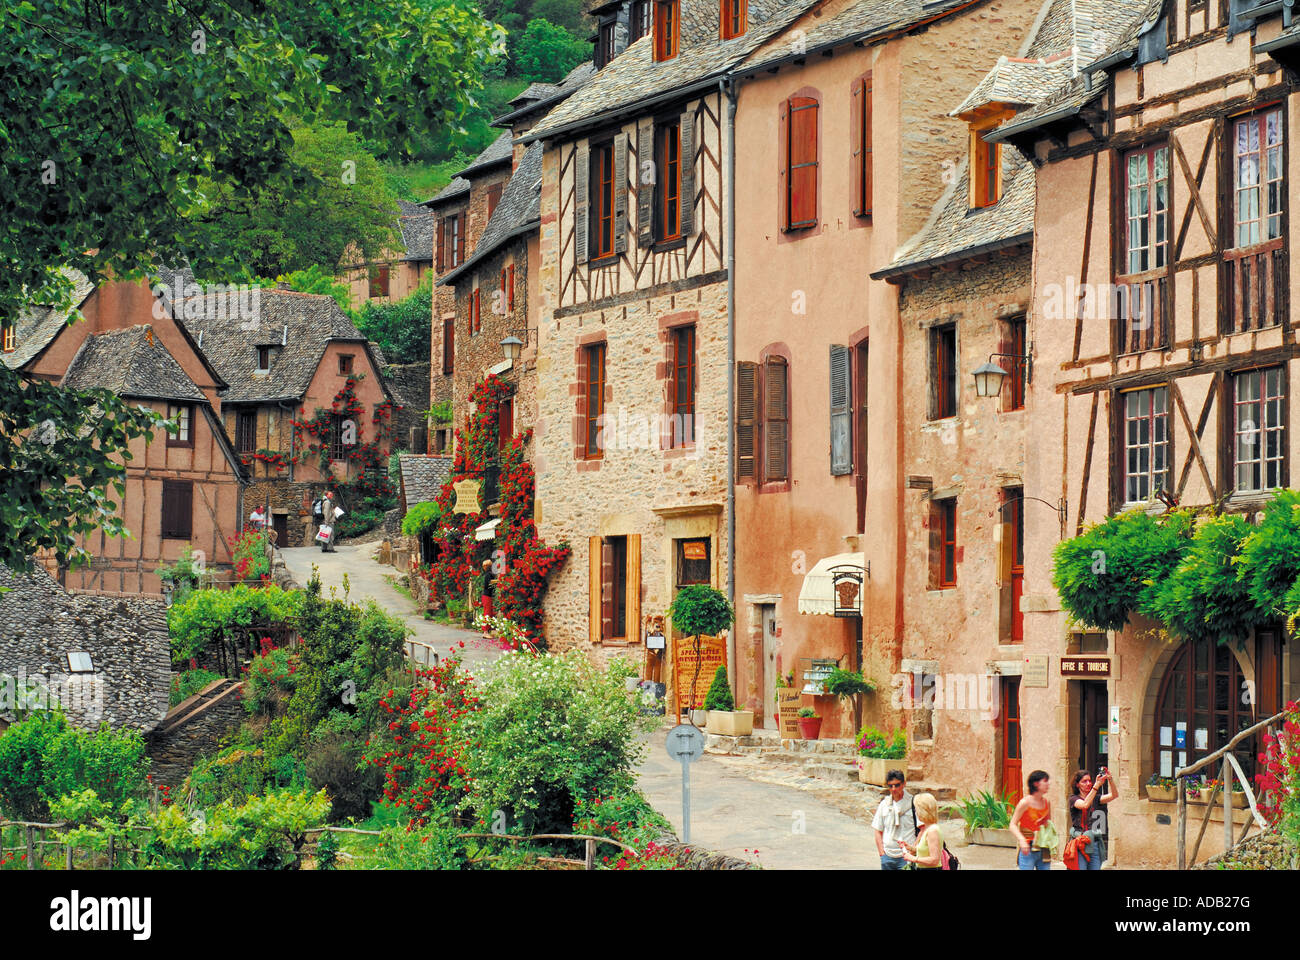 Les maisons historiques à colombages dans la ville de Conques, Midi-Pyrenees, France Banque D'Images